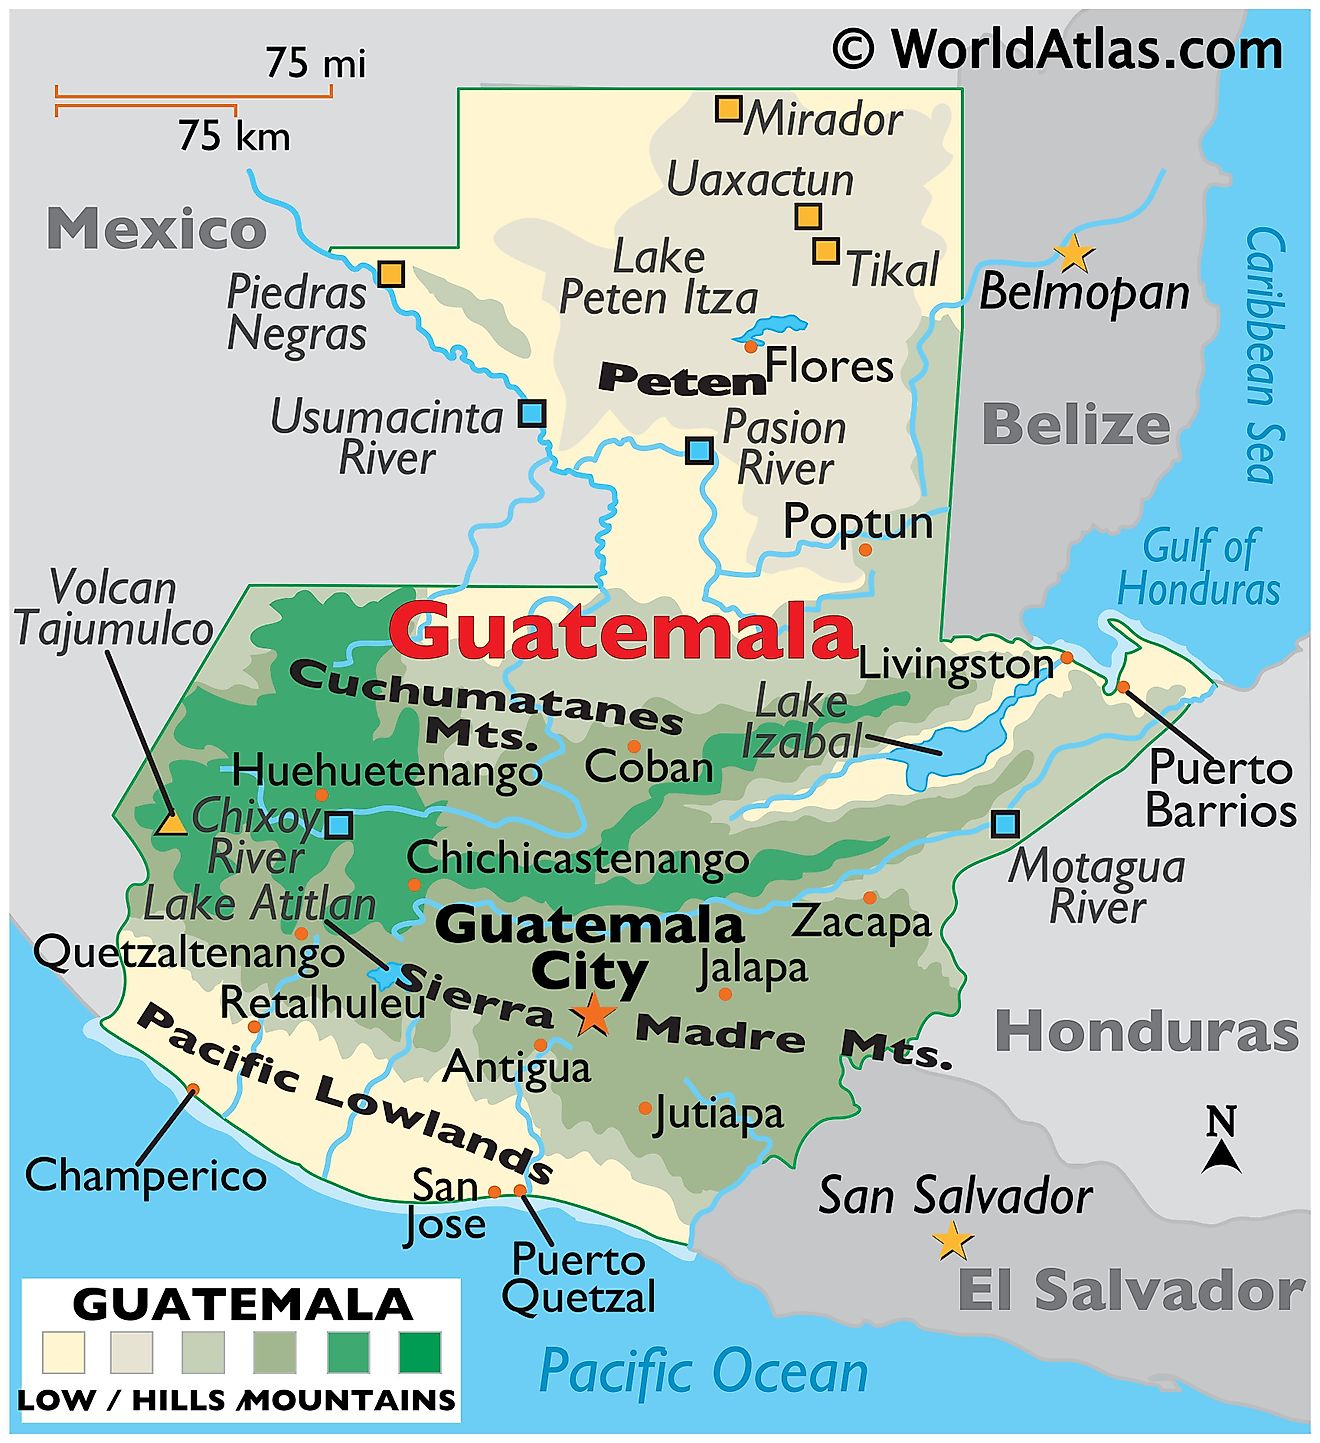 Mapa físico de Guatemala que muestra el terreno, las principales cadenas montañosas, el punto más alto, los ríos, el lago Izabal, la región de Petén, las ciudades importantes, las fronteras internacionales, etc.